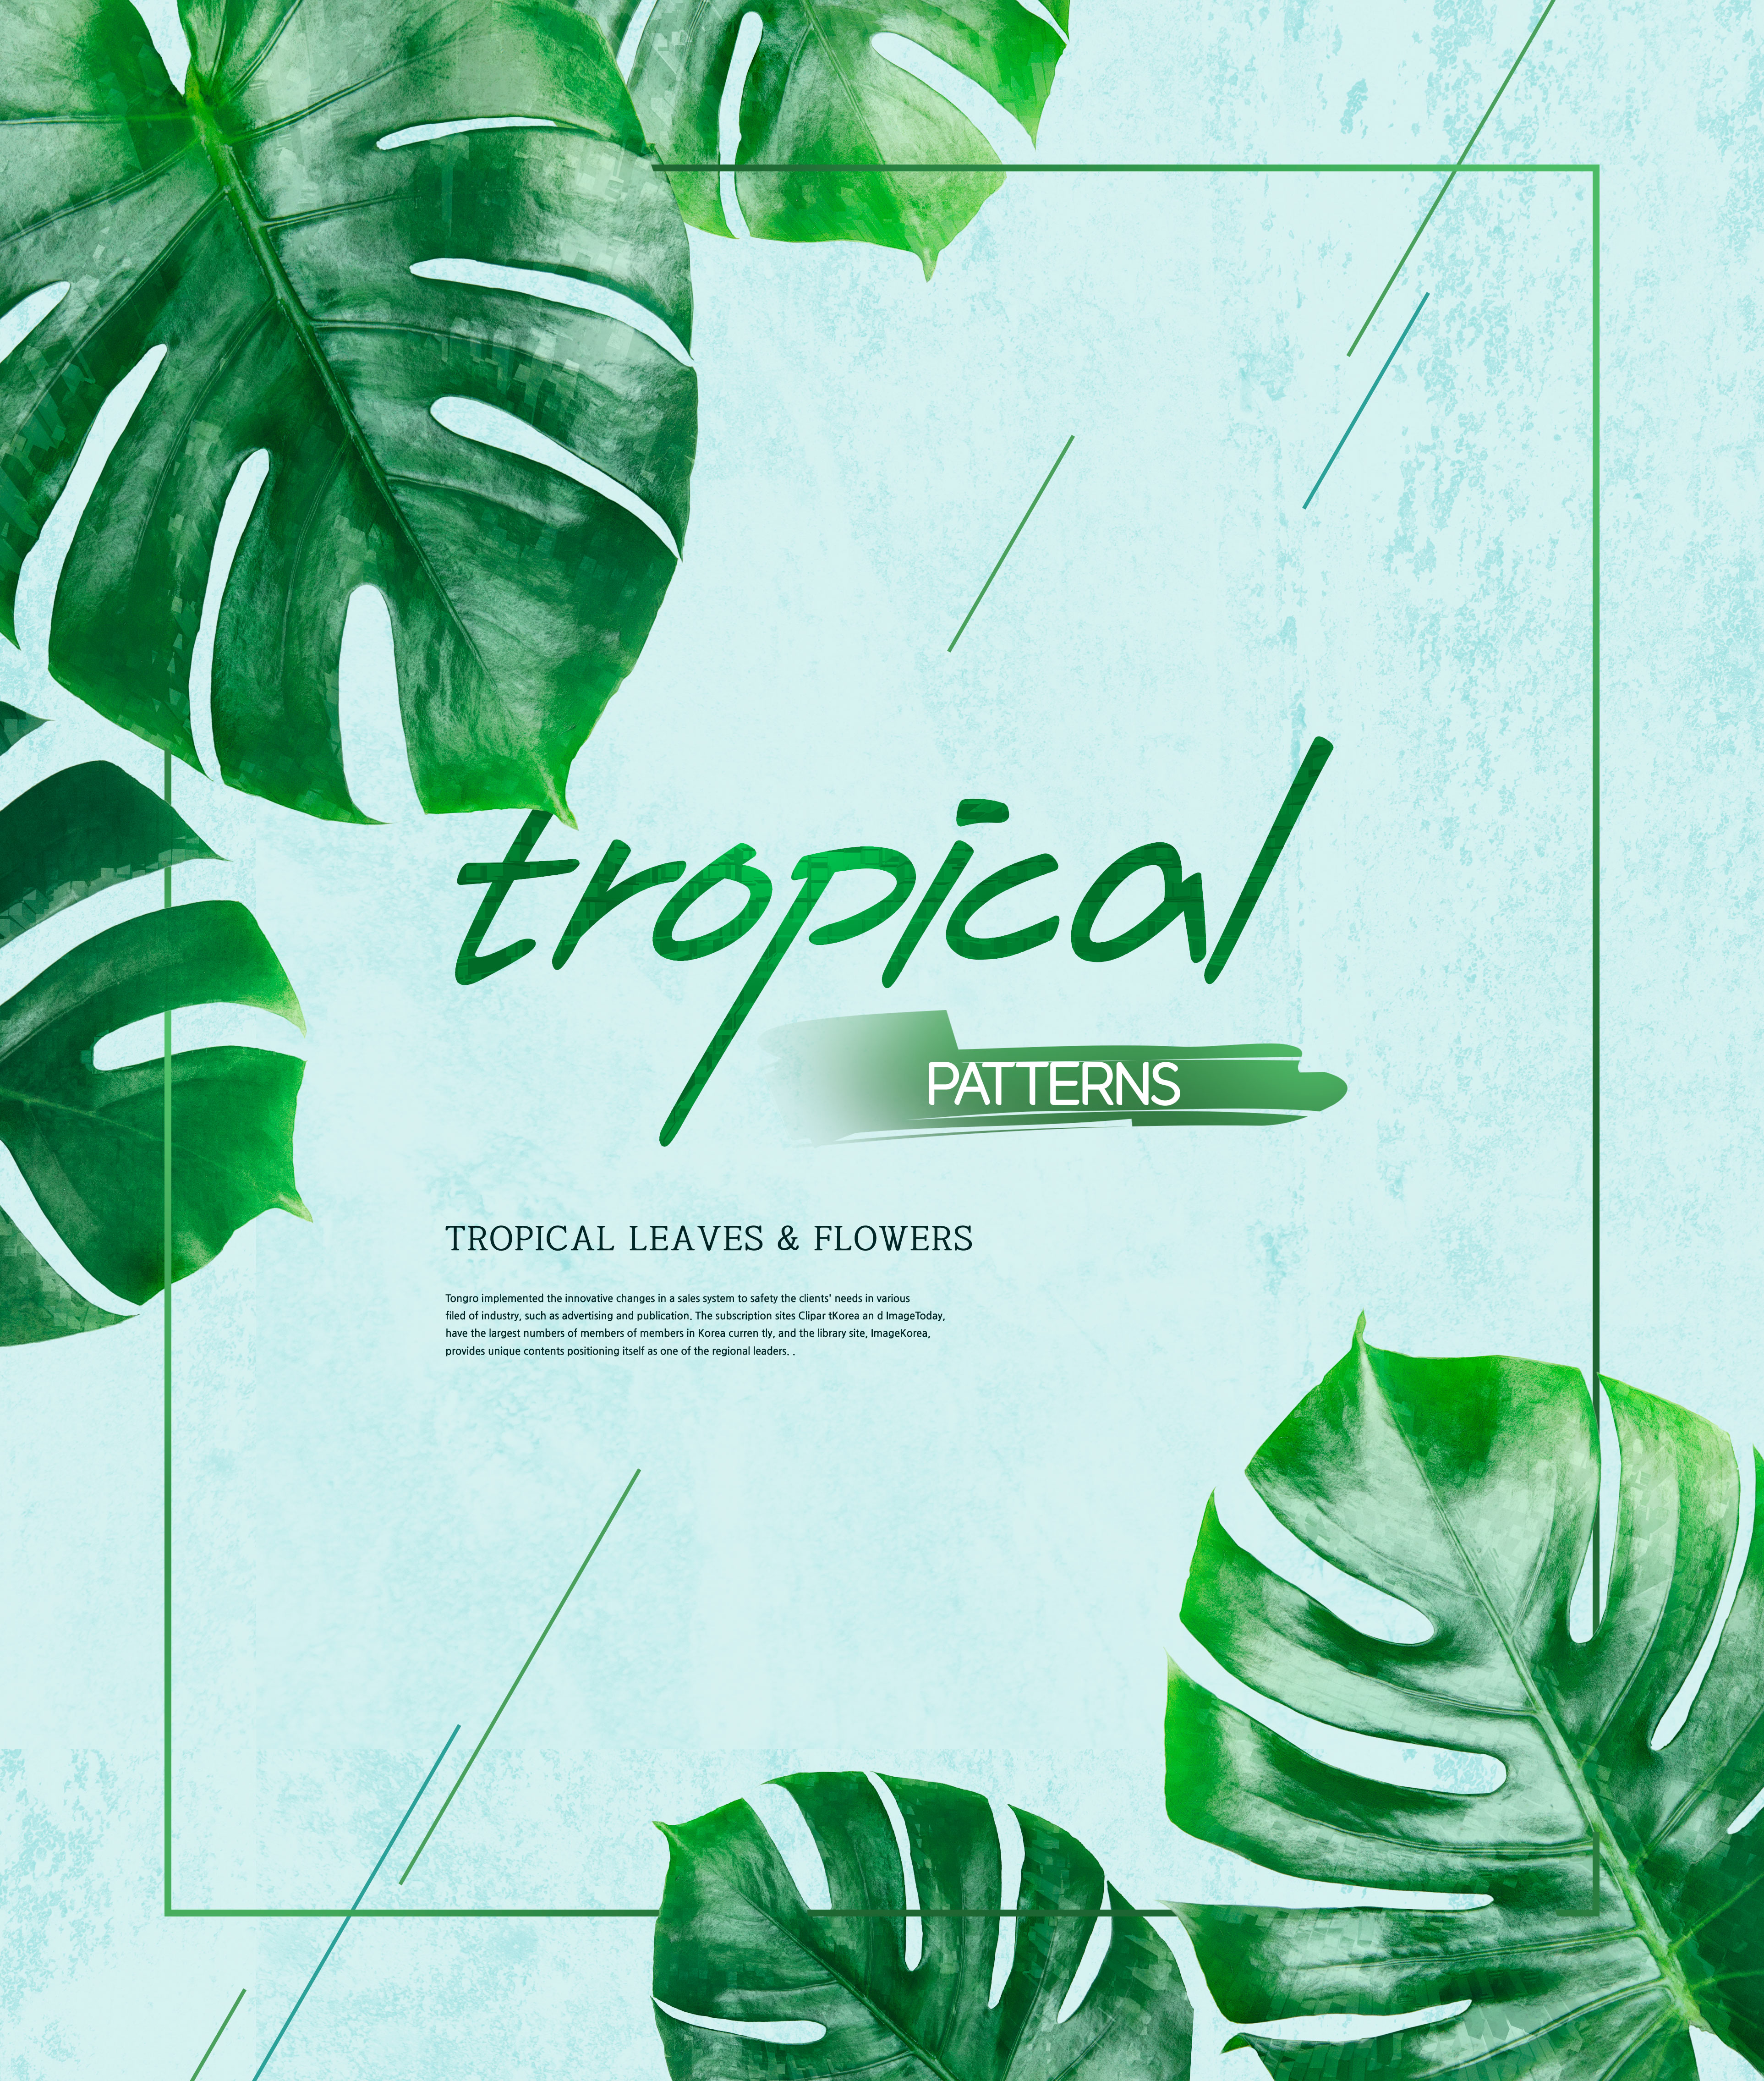 热带植物叶子&花卉图案海报设计素材插图(3)